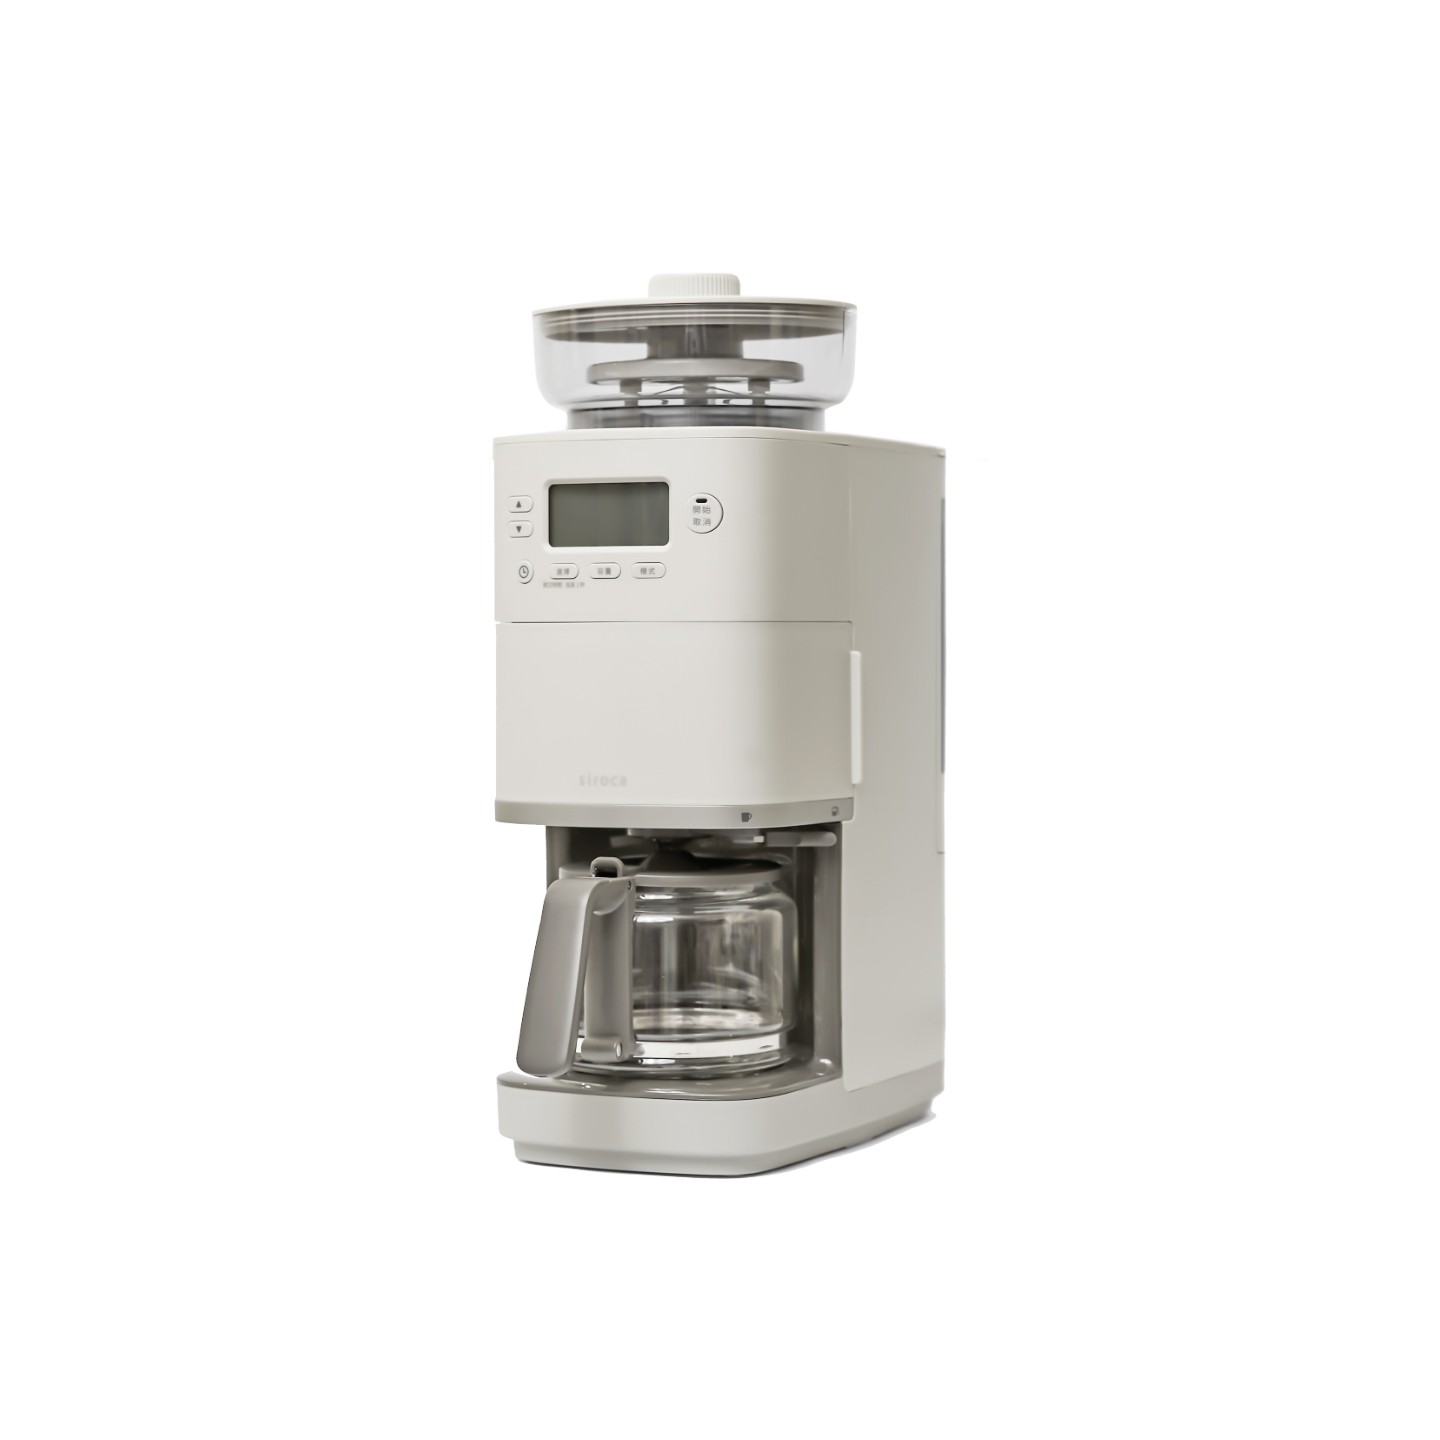 新品上市】SC-C2510 全自動石臼式研磨咖啡機淺灰色| 廚房家電| siroca